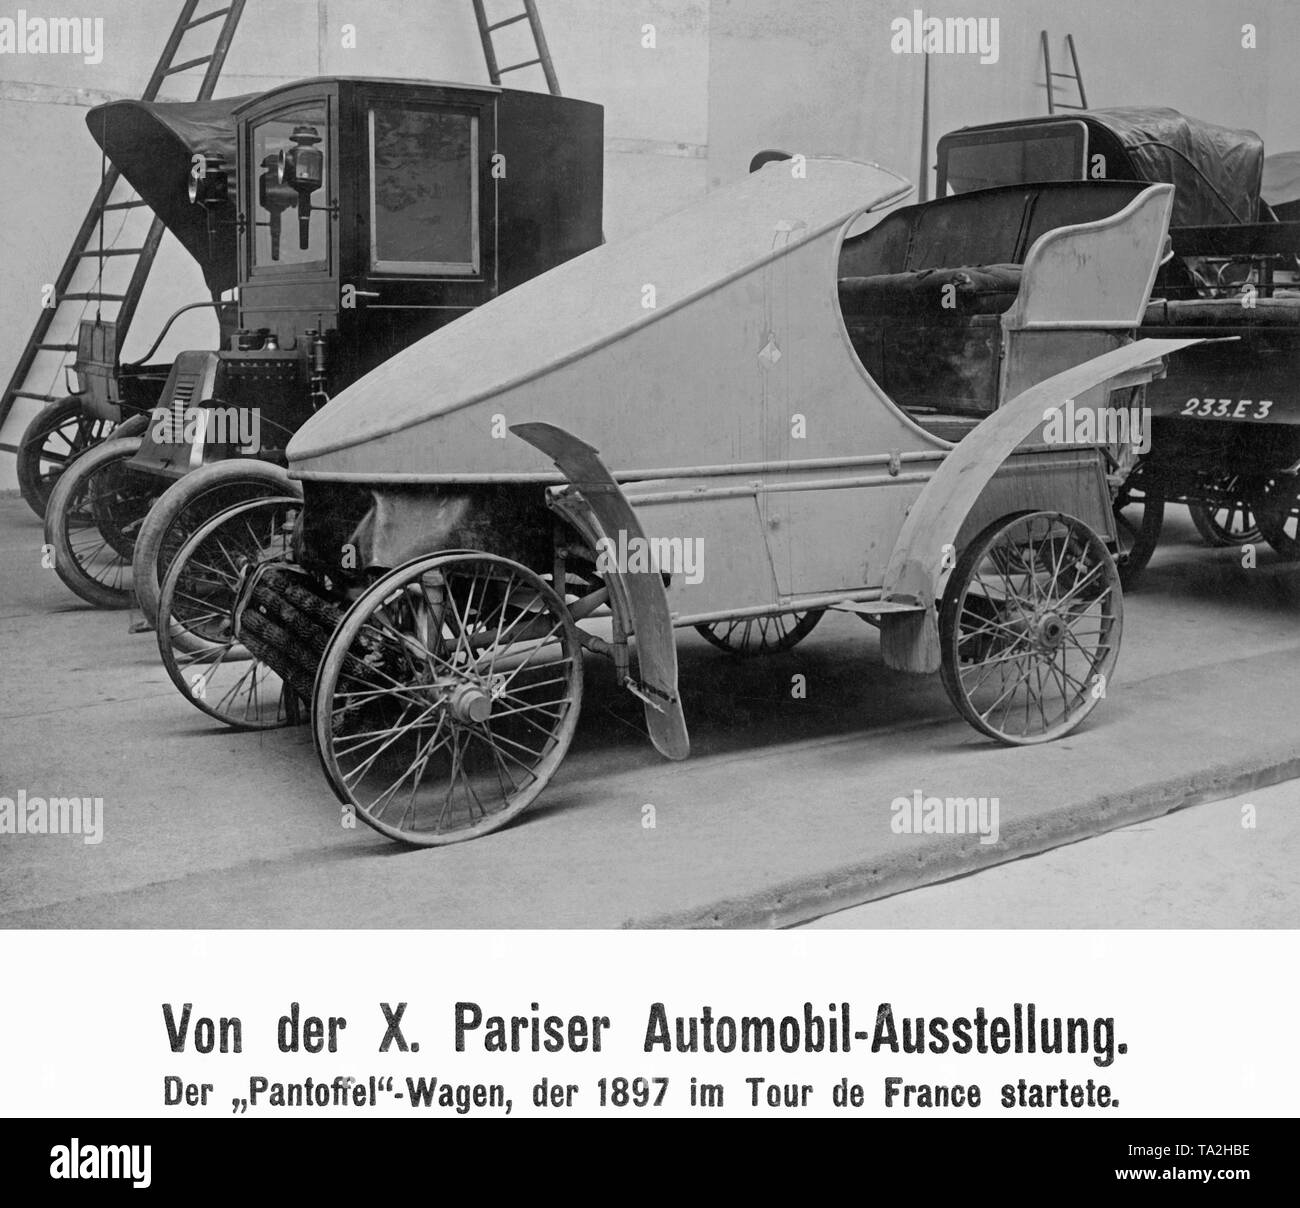 La forme aérodynamique, soi-disant "Pantoffelwagen» (slipper voiture) à la 10e Paris Motor Show. La voiture a participé au Tour de France automobile de course de voiture de sport en 1897. Banque D'Images